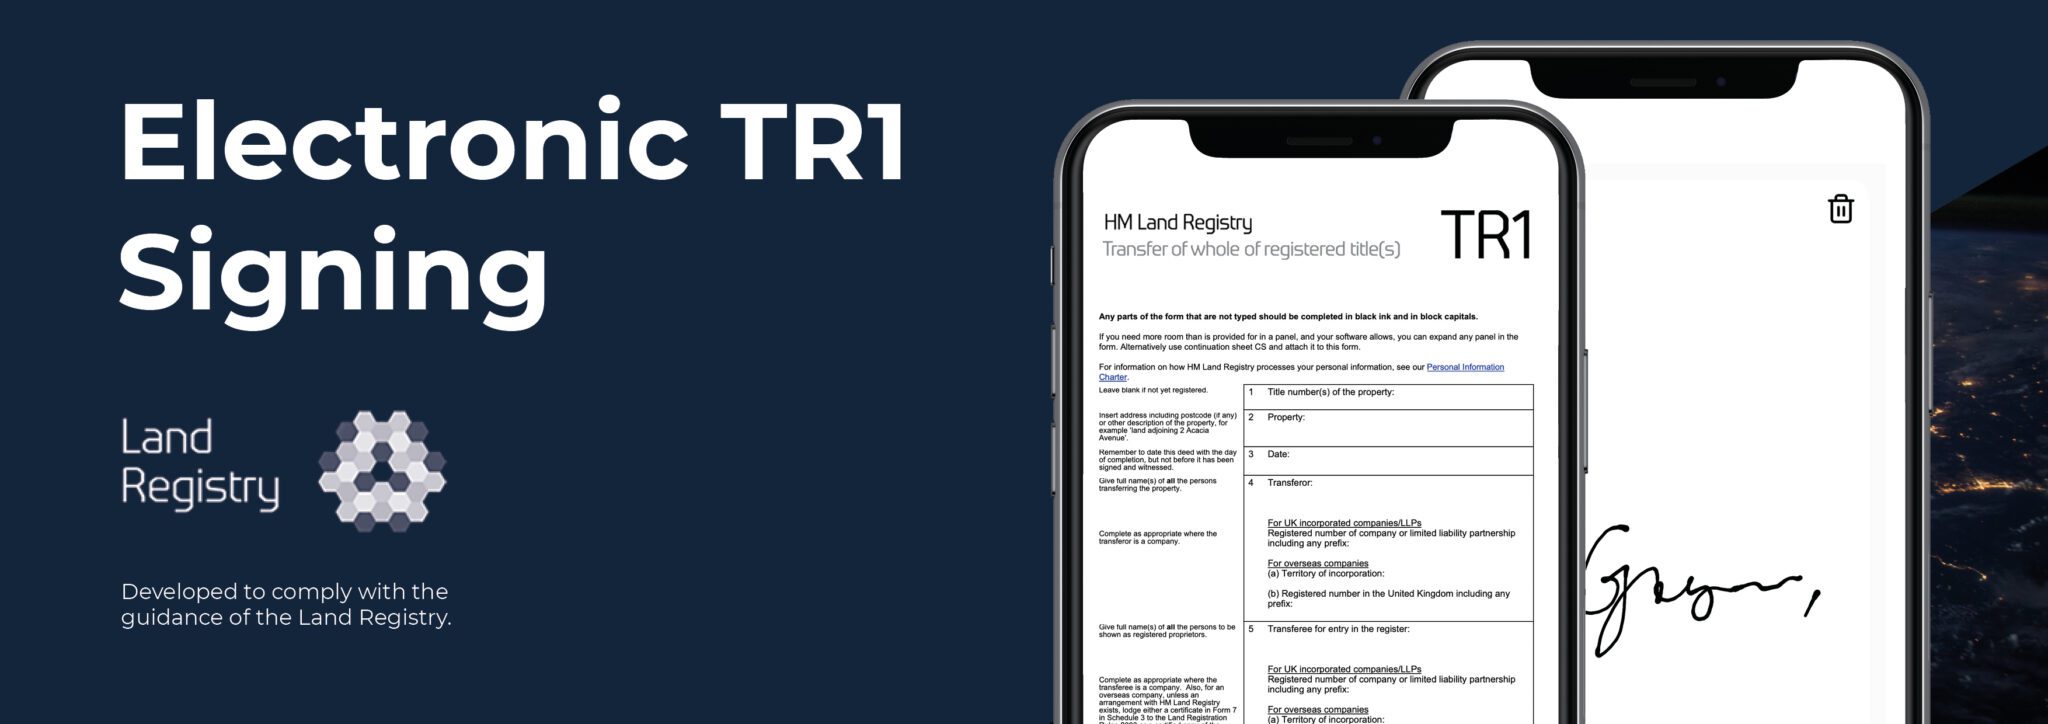 TR1 signing through the inCase app